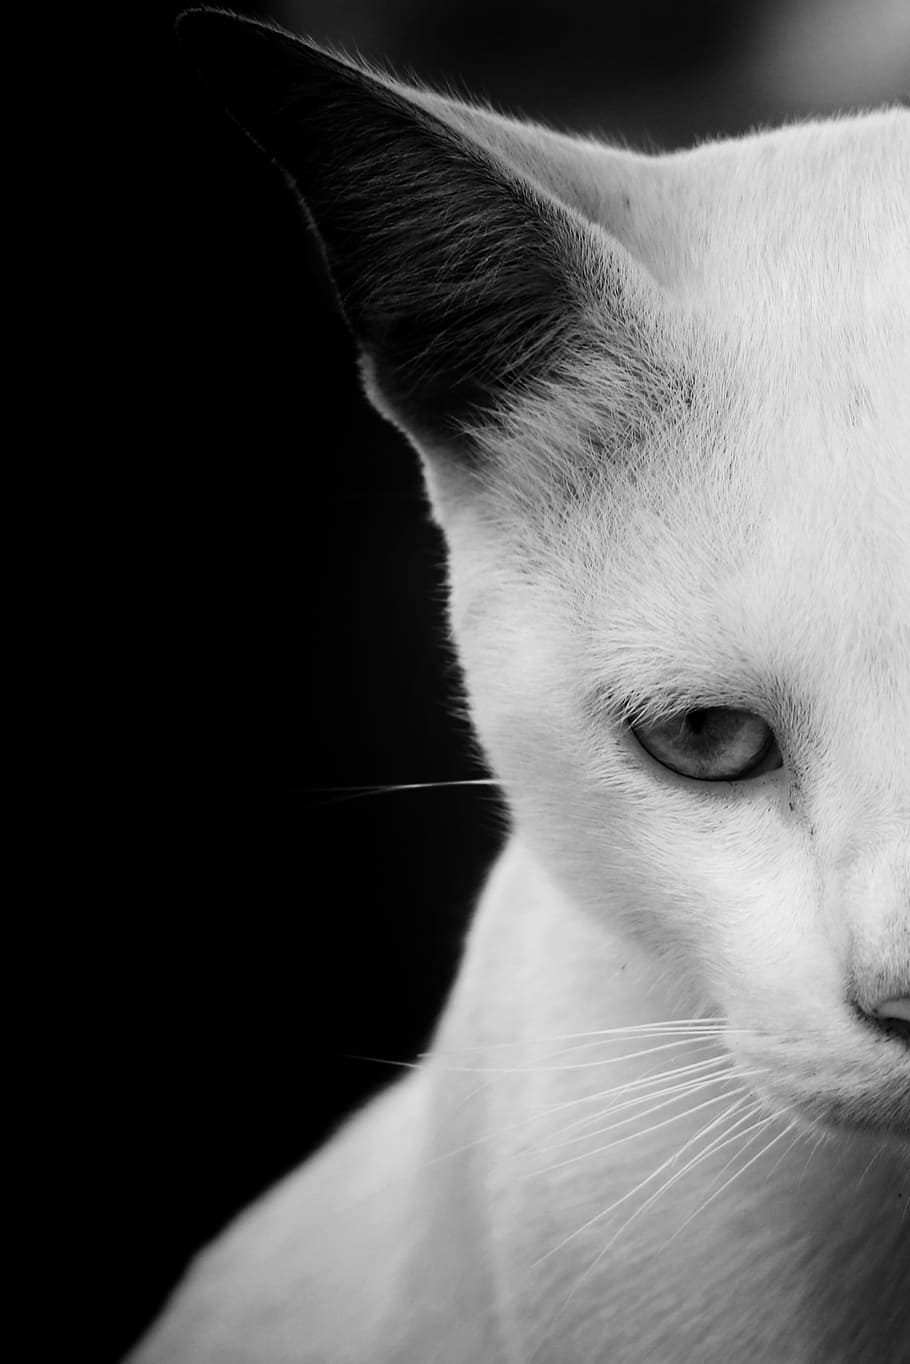 foto setengah wajah grayscale, kucing, margasatwa, hewan, mata, kebun binatang, pemburu, hitam, putih, kucing liar